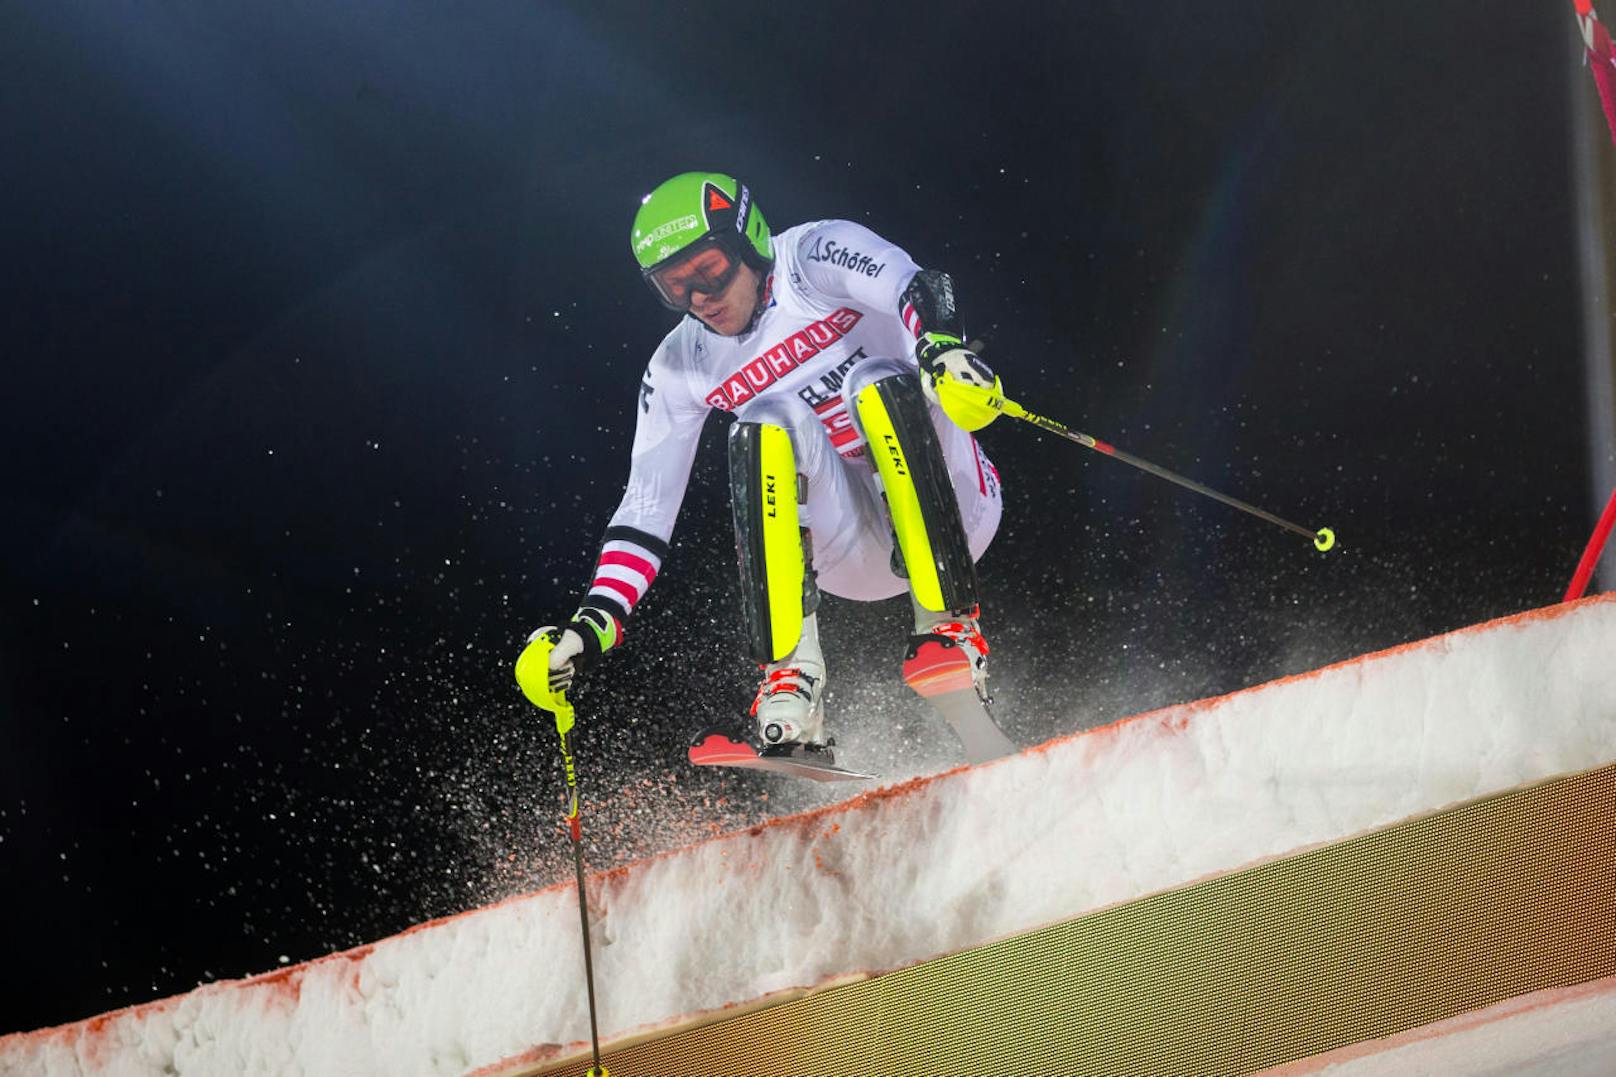 Michael Matt macht im Slalom Hirscher und Co. Konkurrenz. Vor vier Jahren gewann sein Bruder Mario Olympia-Gold. Ein gutes Omen?